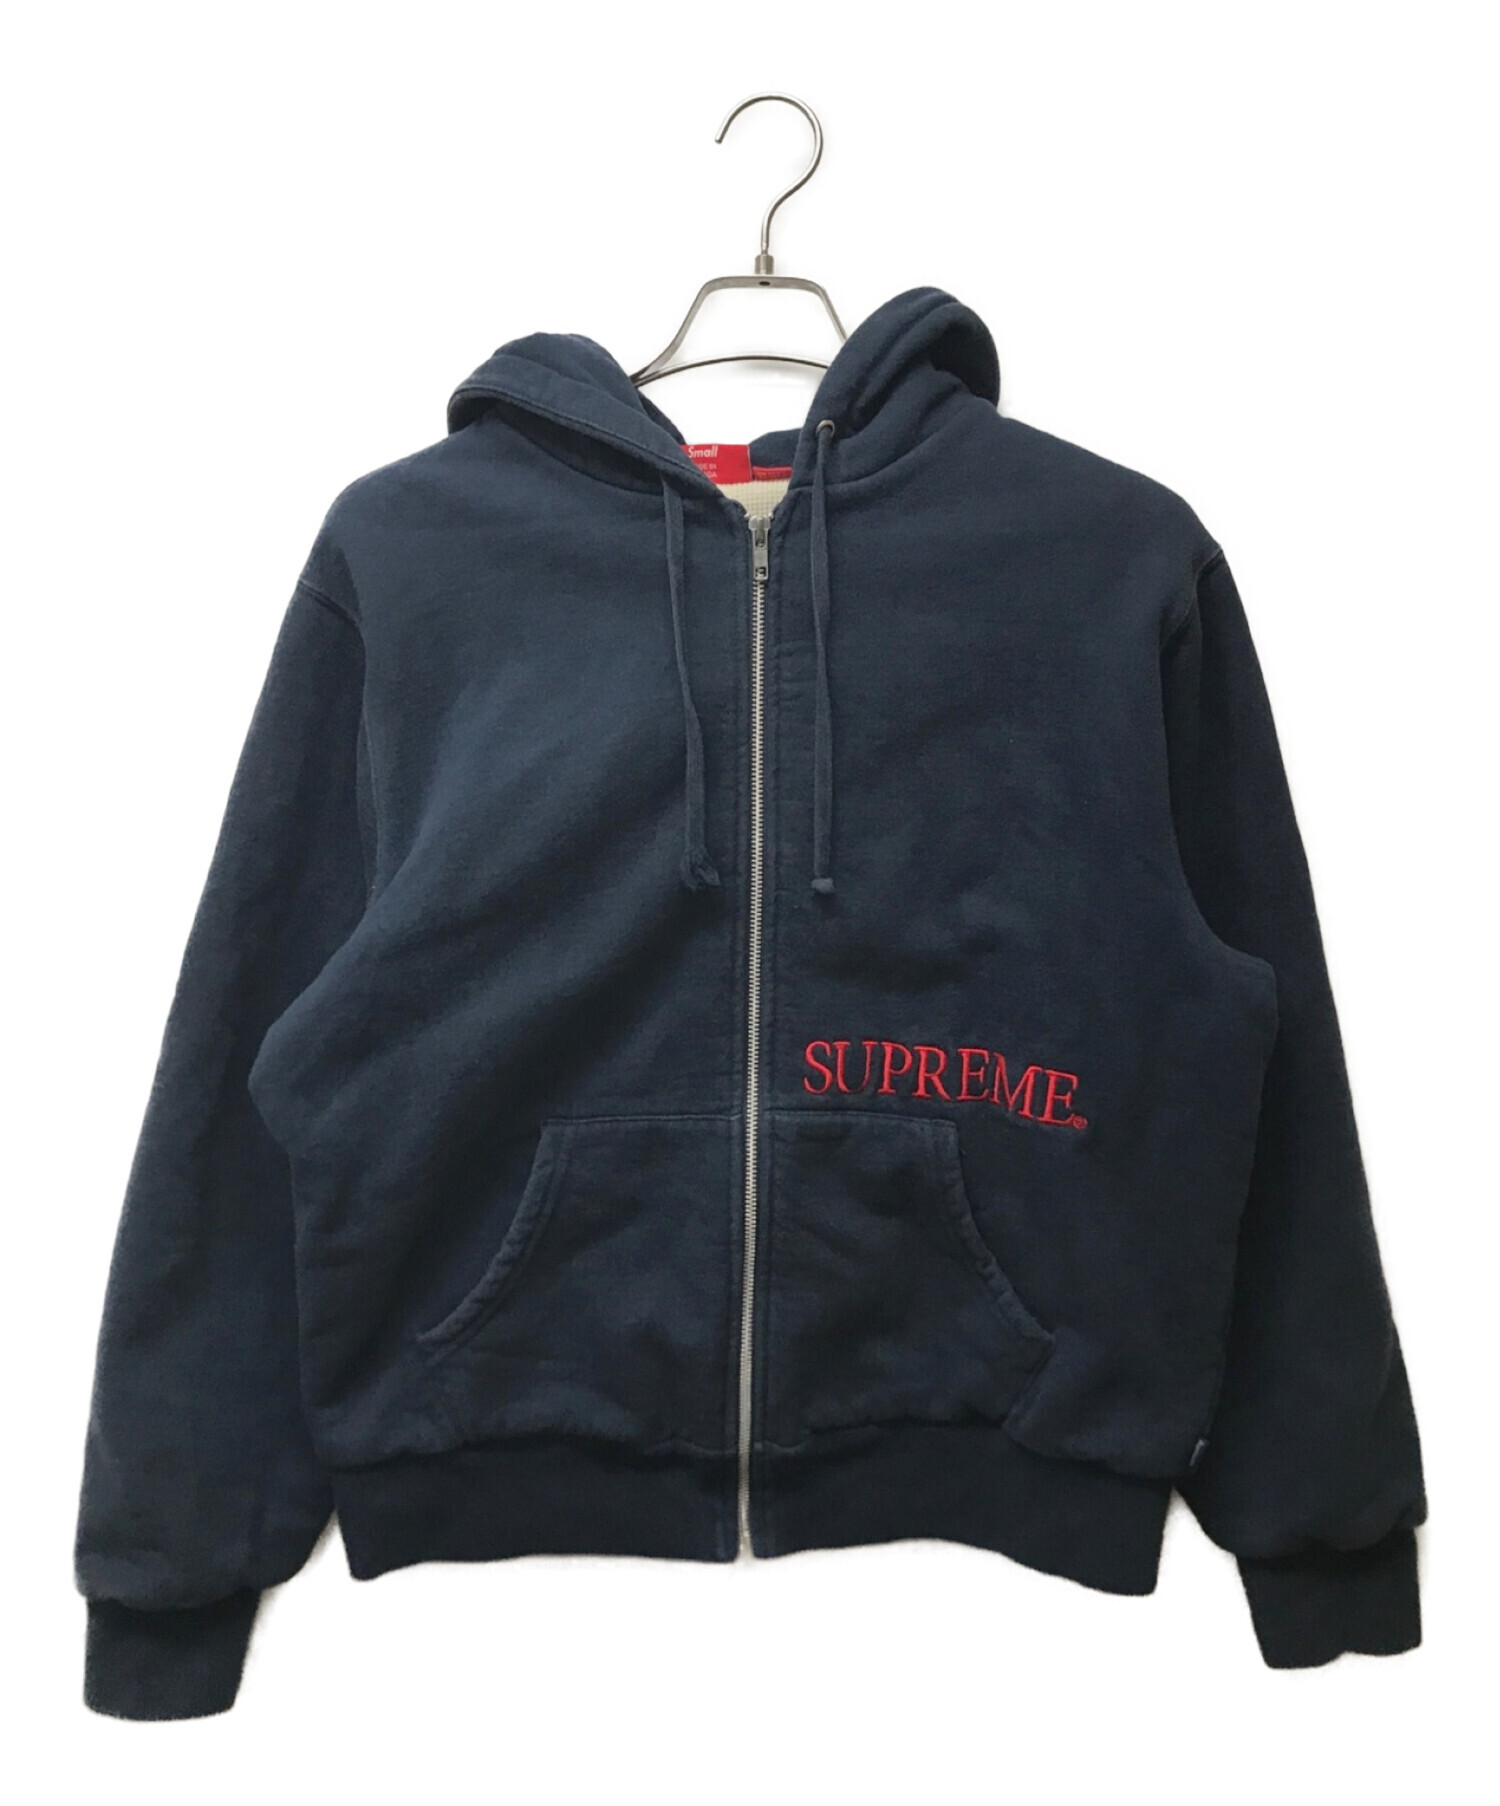 Supreme Thermal ZipUp Sweatshirt